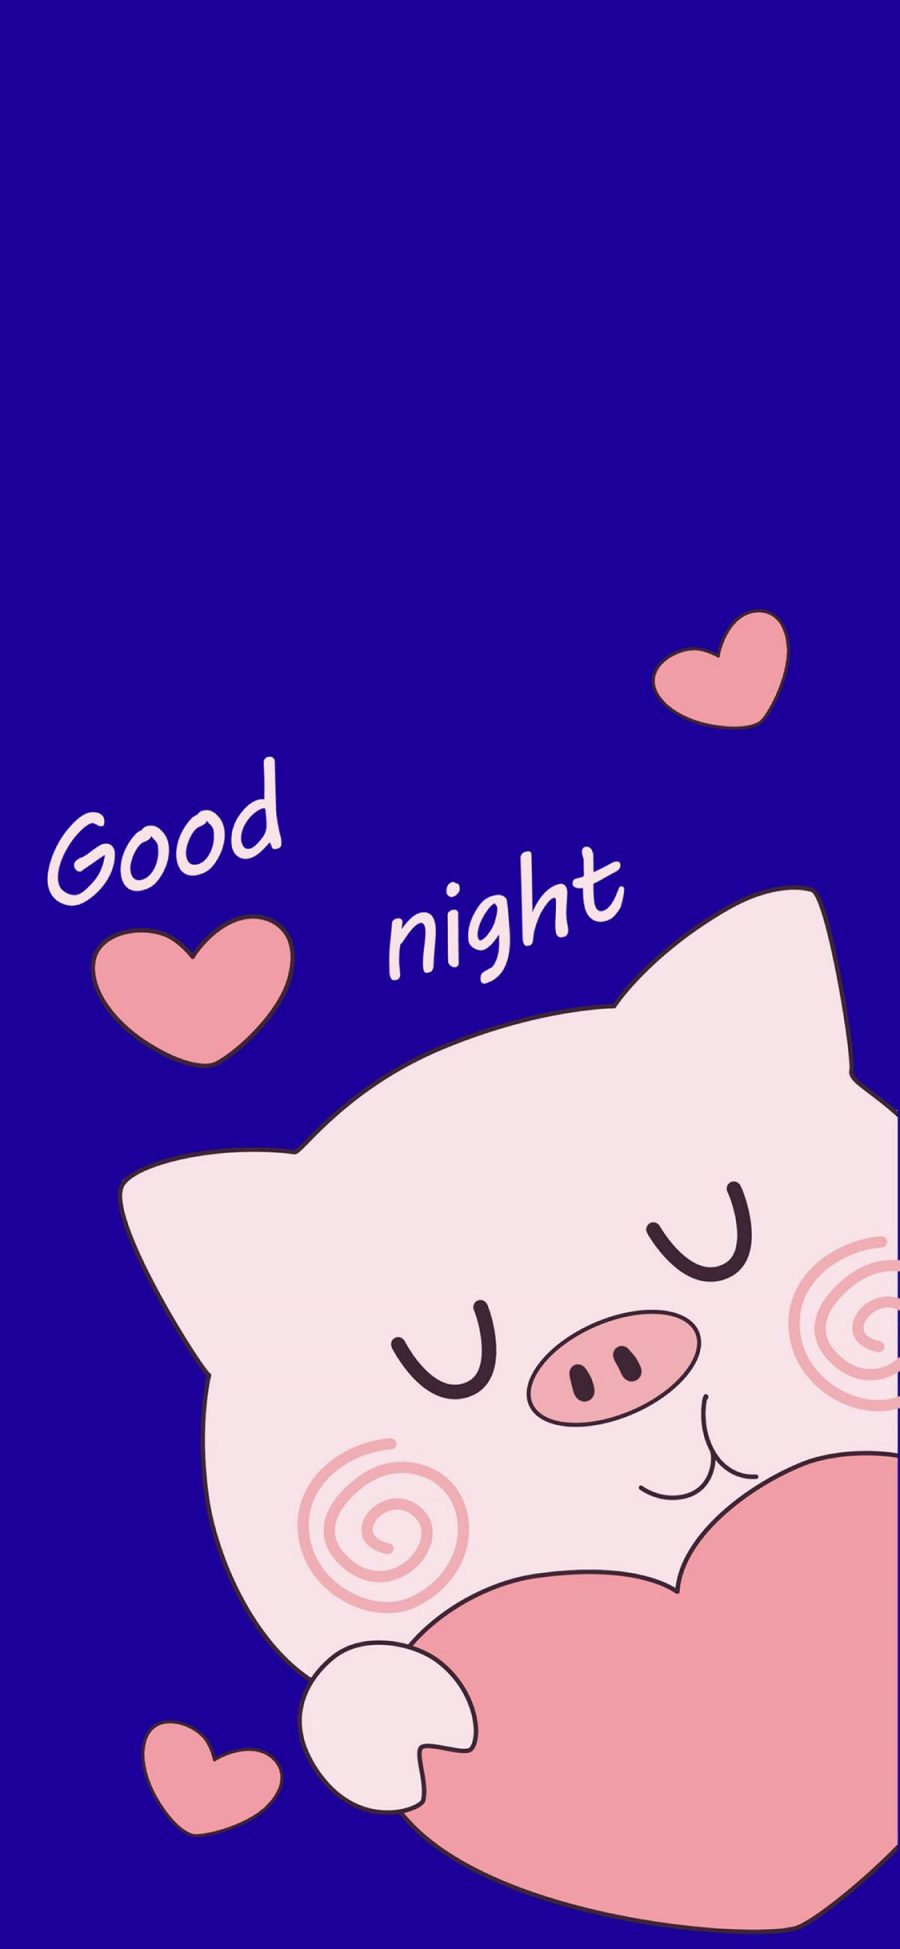 [2436×1125]蓝色背景 卡通 猪猪 爱心 good night 苹果手机动漫壁纸图片